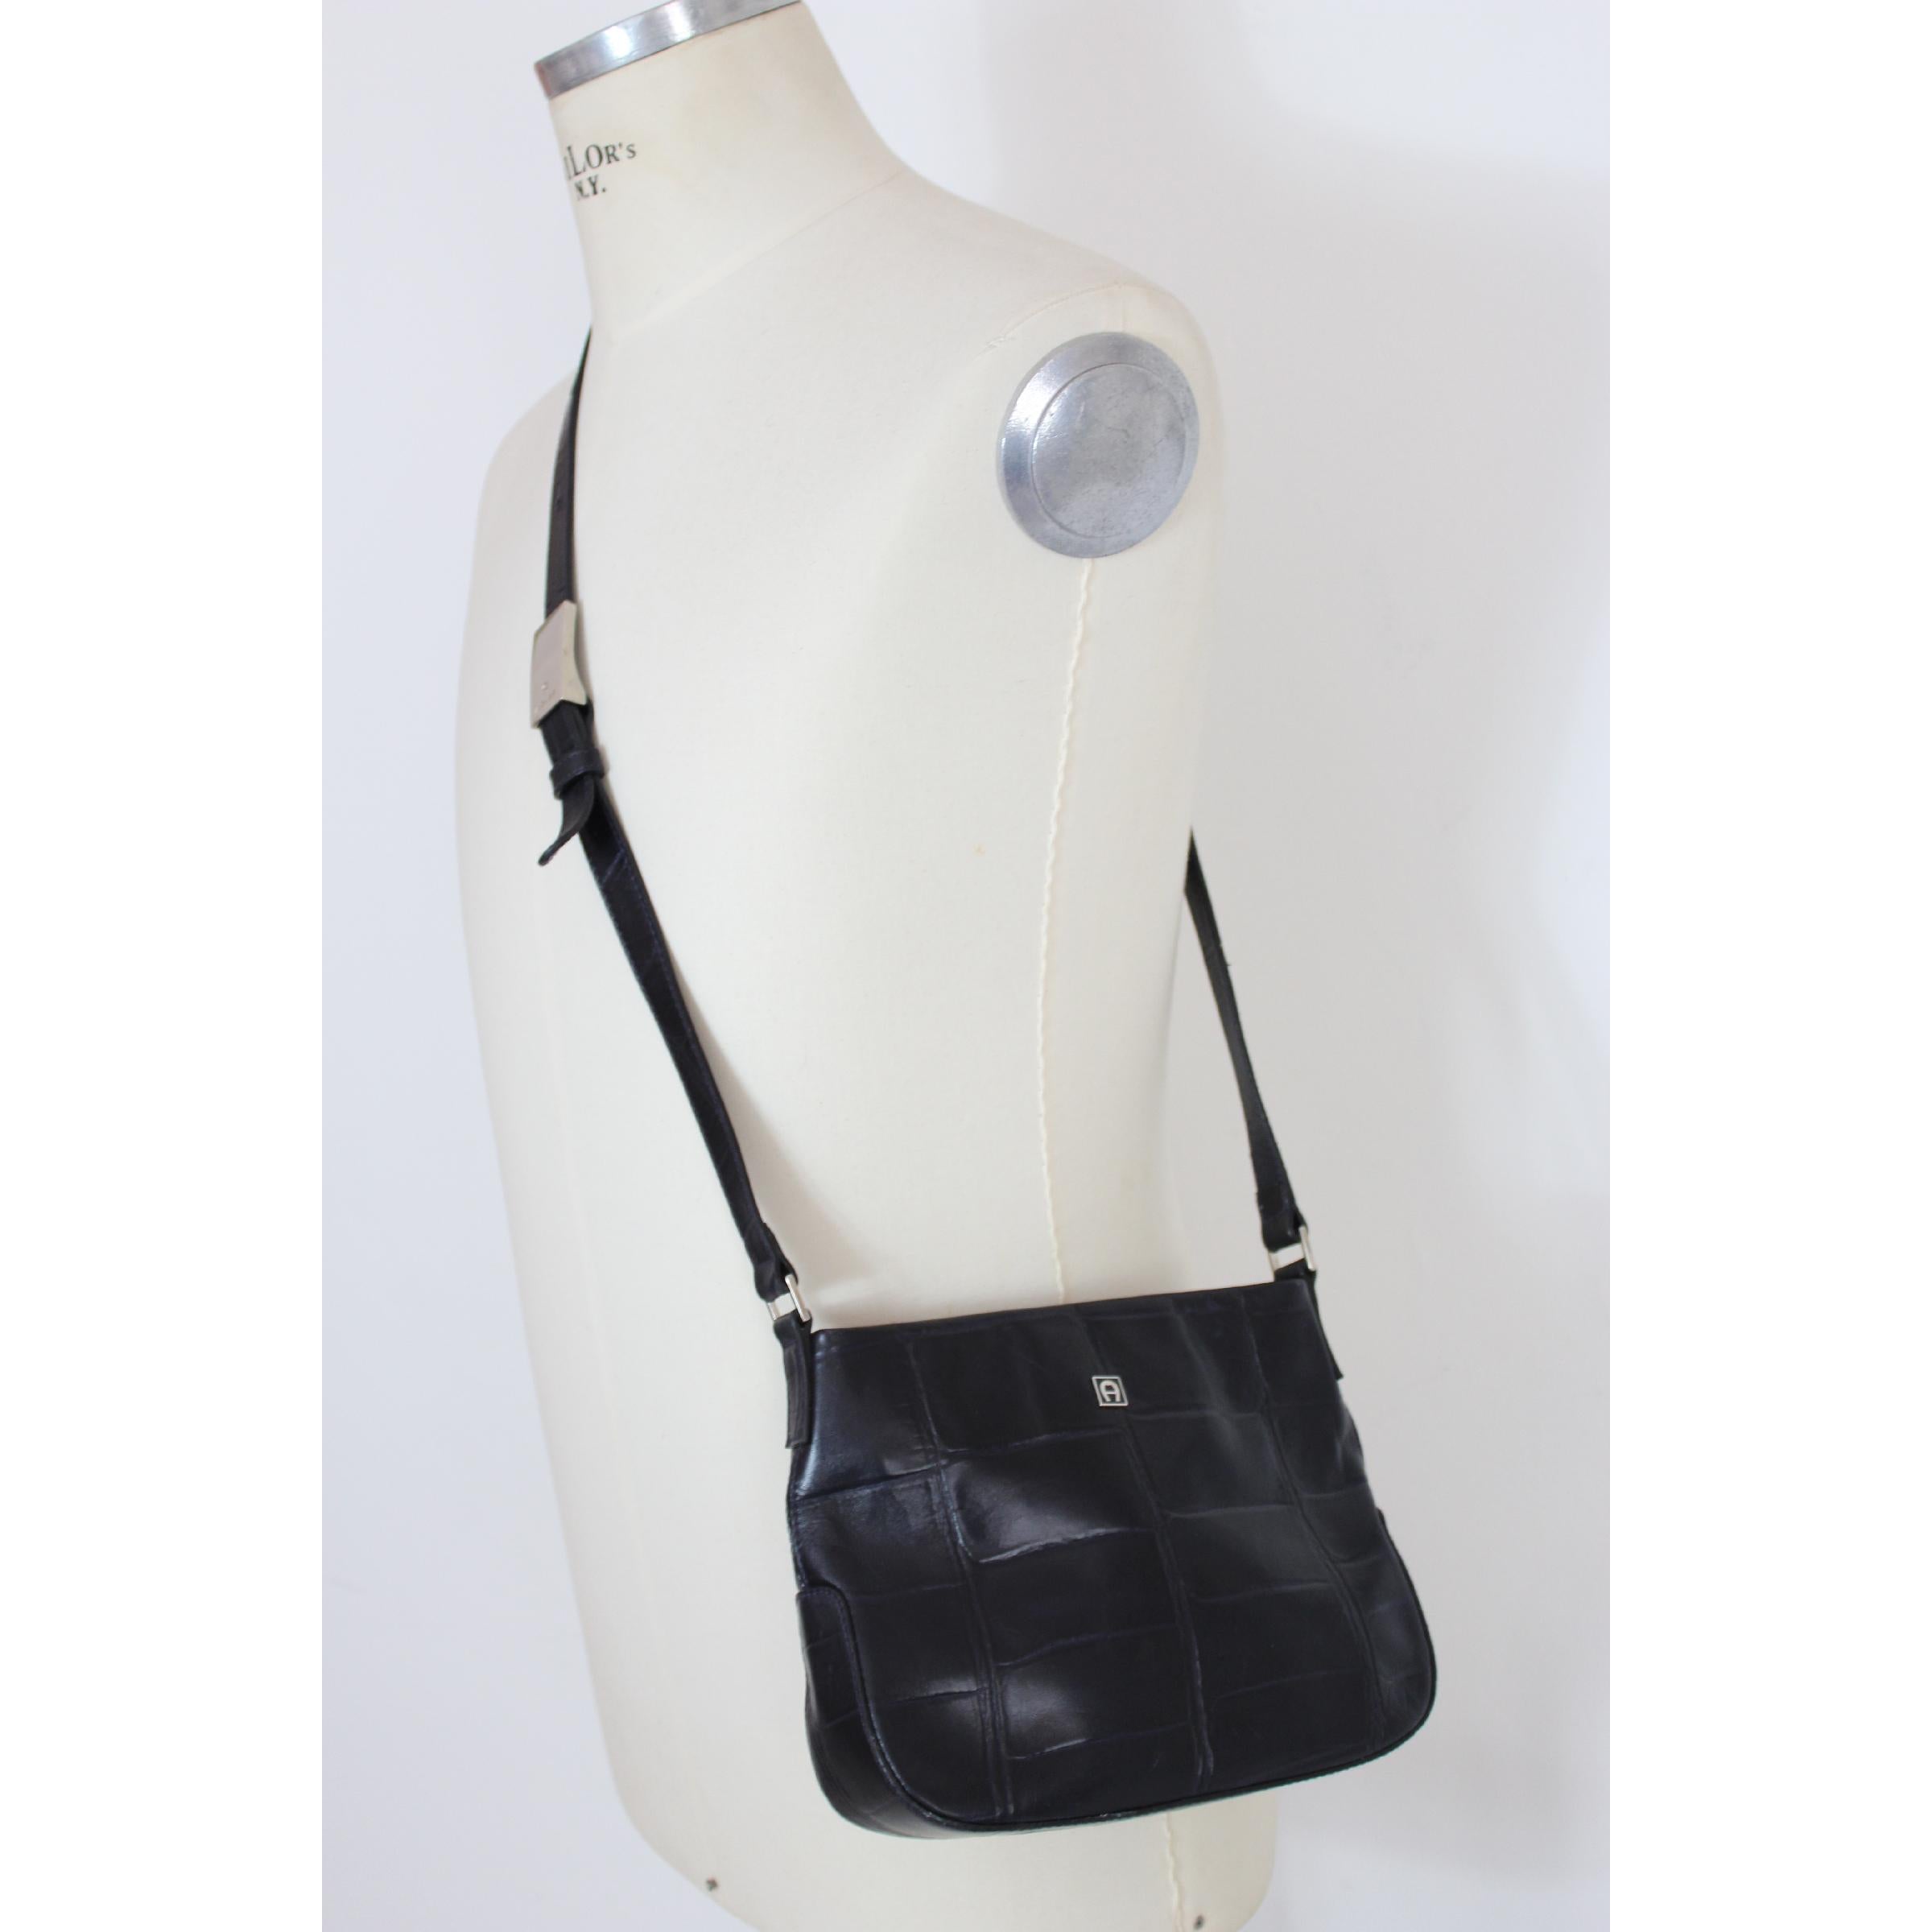 Vintage Etienne Aigner 70s bag. Small model with shoulder strap, blue color, 100% leather. Zip closure, inside pocket. Made in France. Excellent vintage condition. 

Height: 18 cm 
Width: 24 cm 
Depth: 8 cm